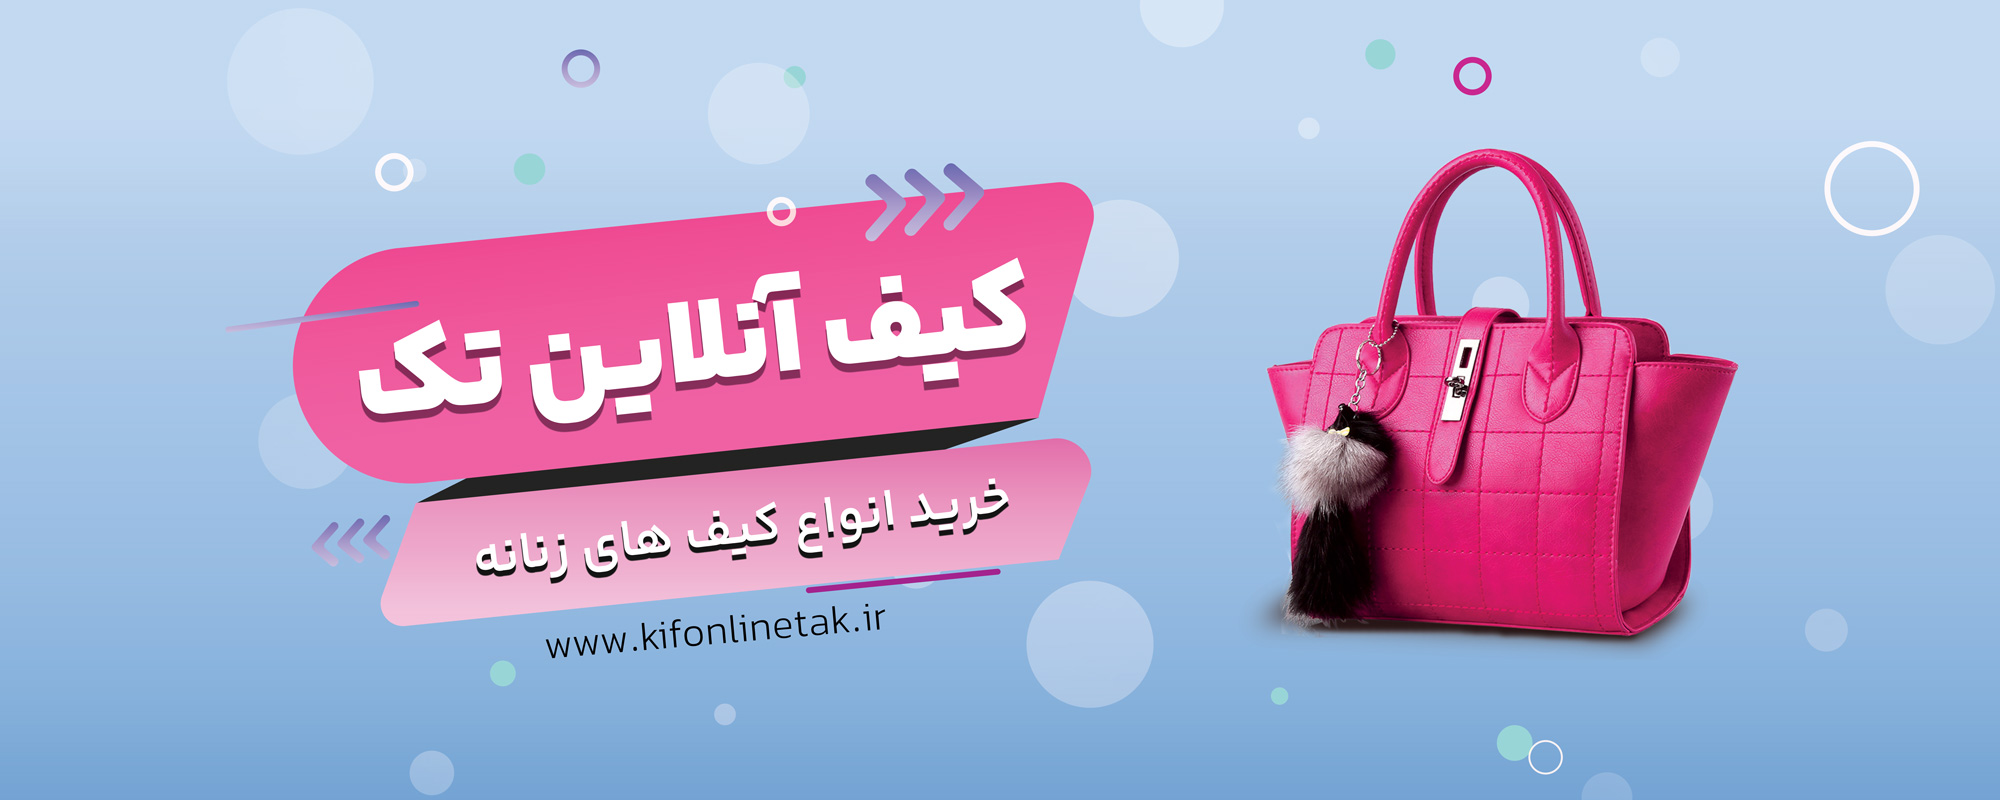 خرید کیف زنانه جدید - کیف آنلاین تک